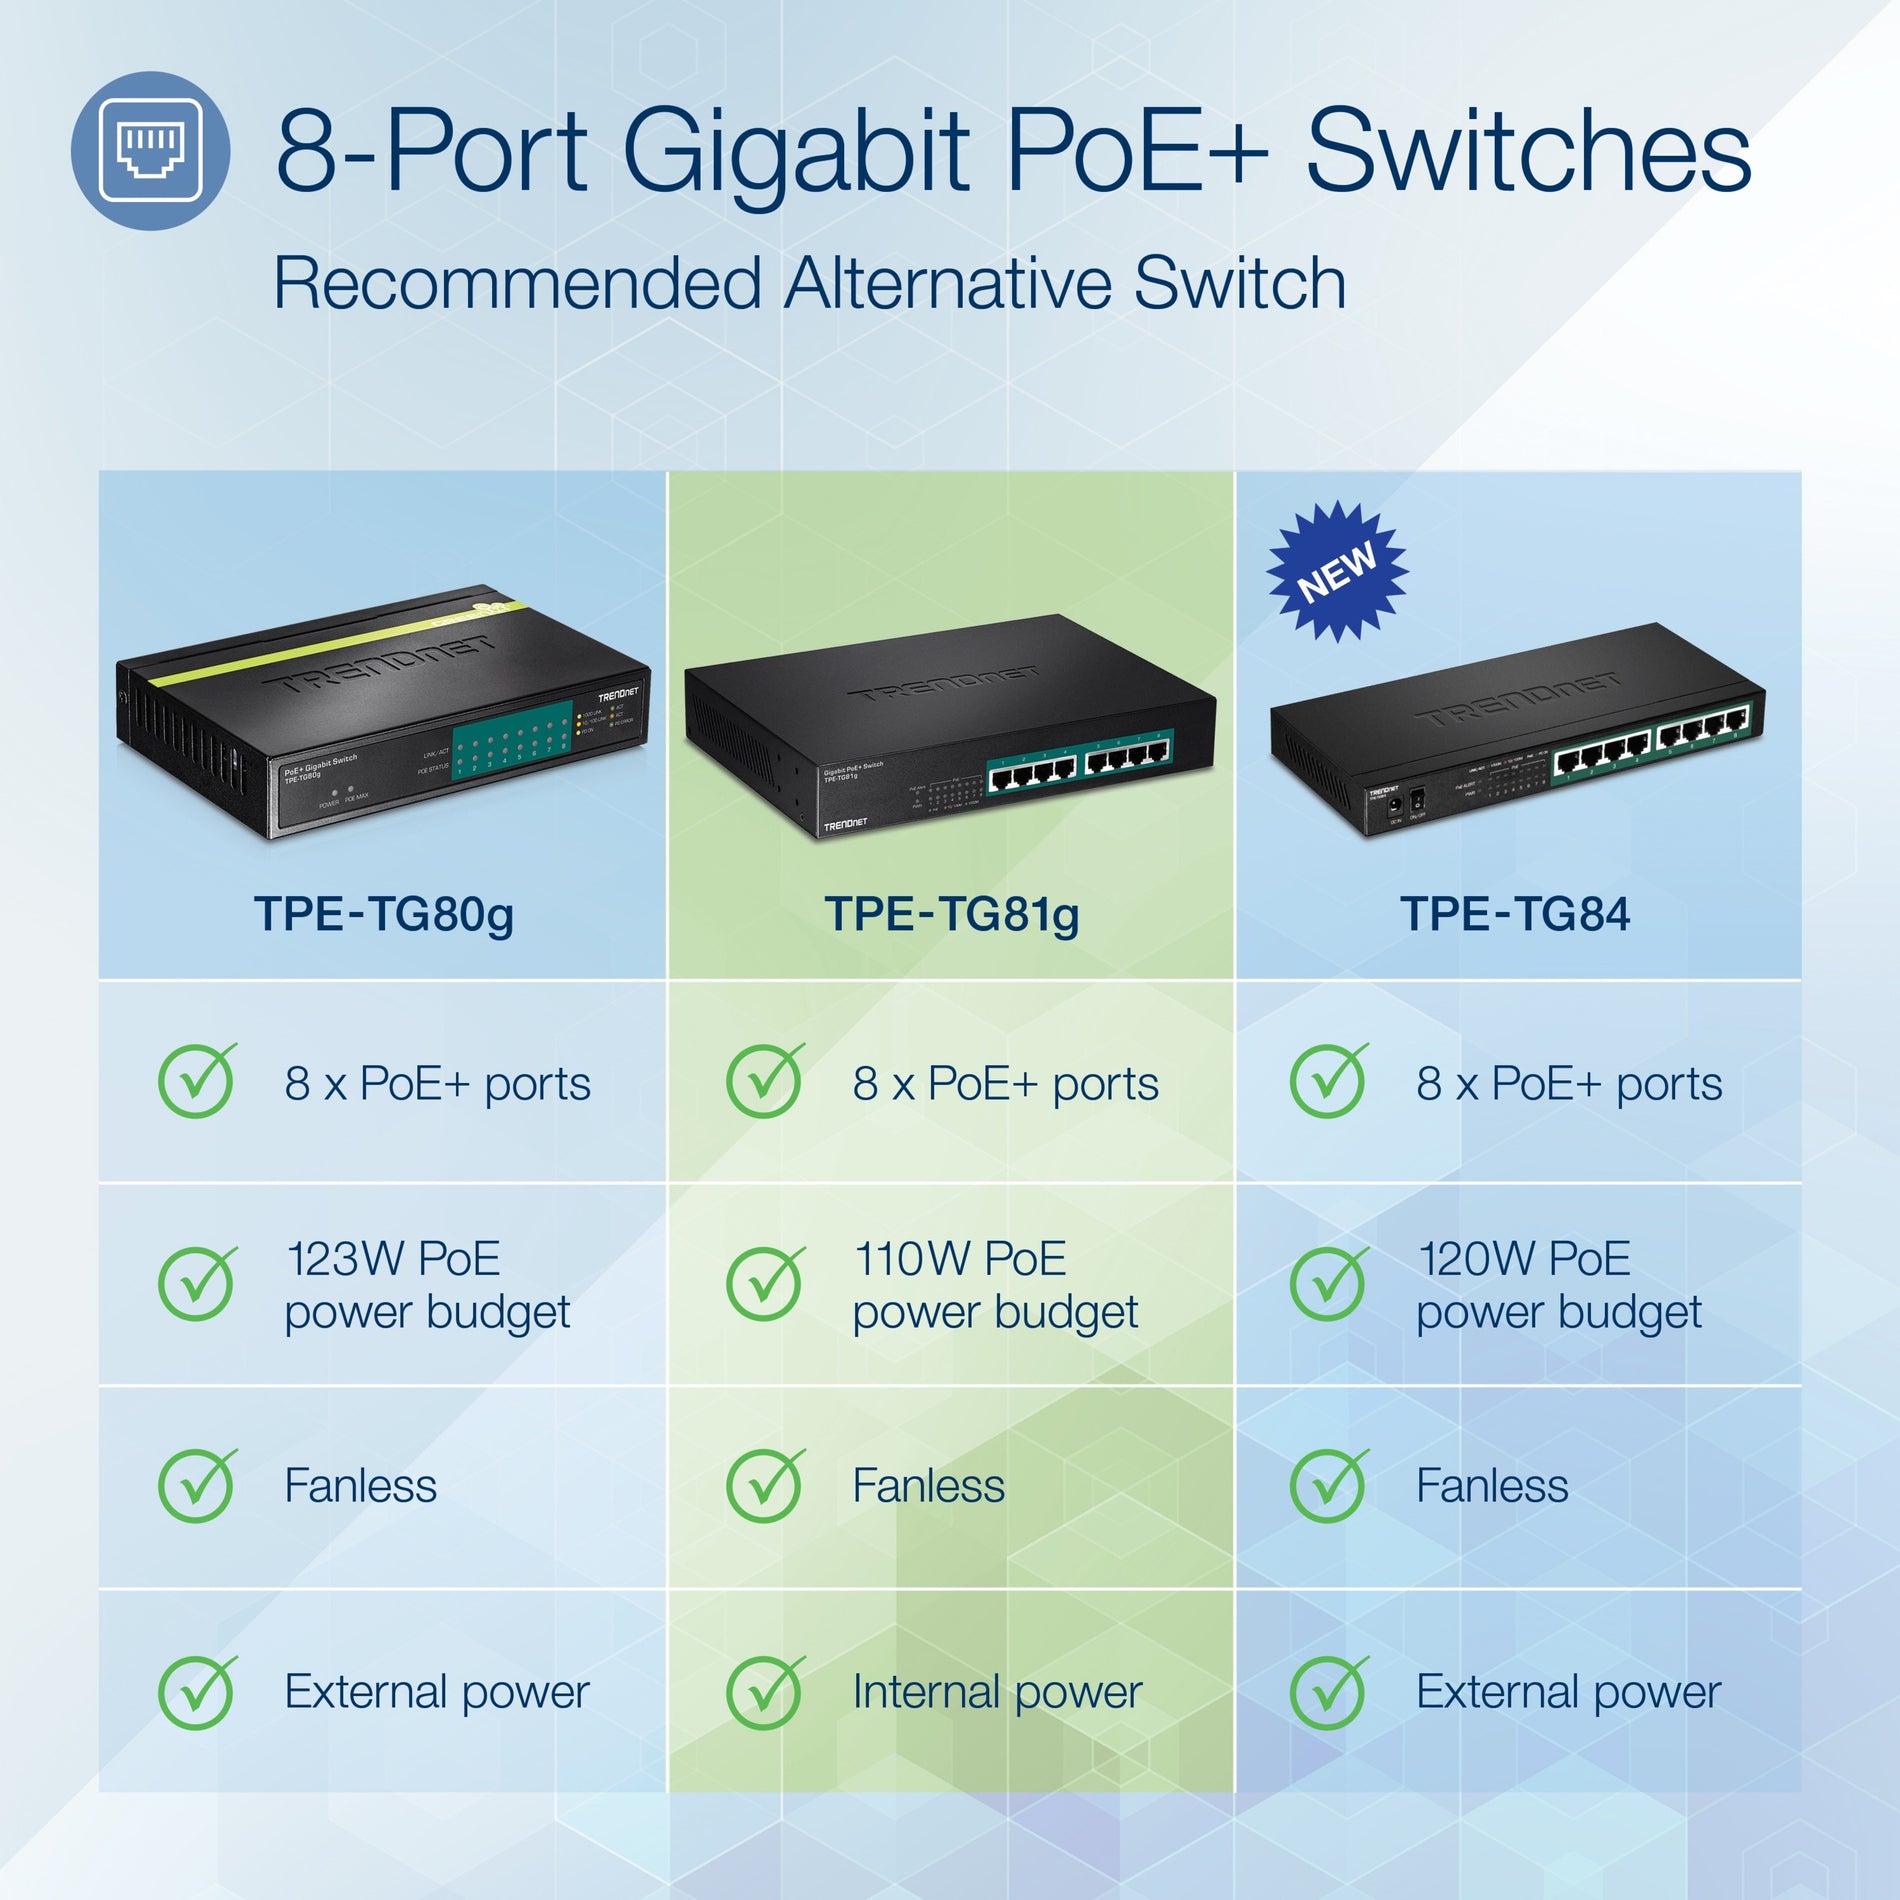 TRENDnet 8-port PoE+ Gigabit Switches (TPE-TG81g)